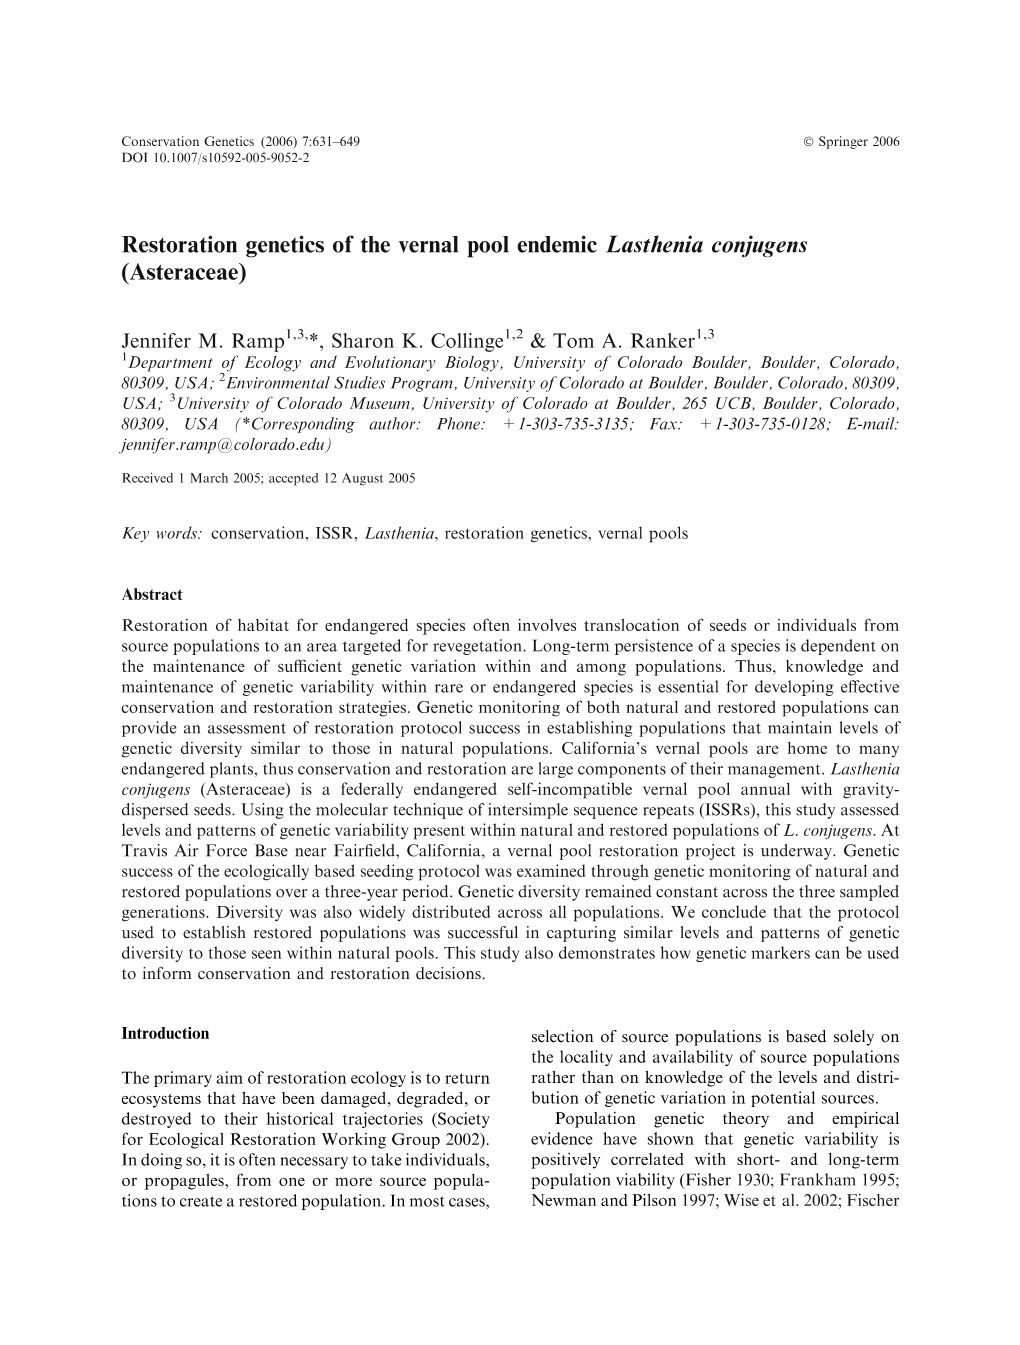 Restoration Genetics of the Vernal Pool Endemic Lasthenia Conjugens (Asteraceae)